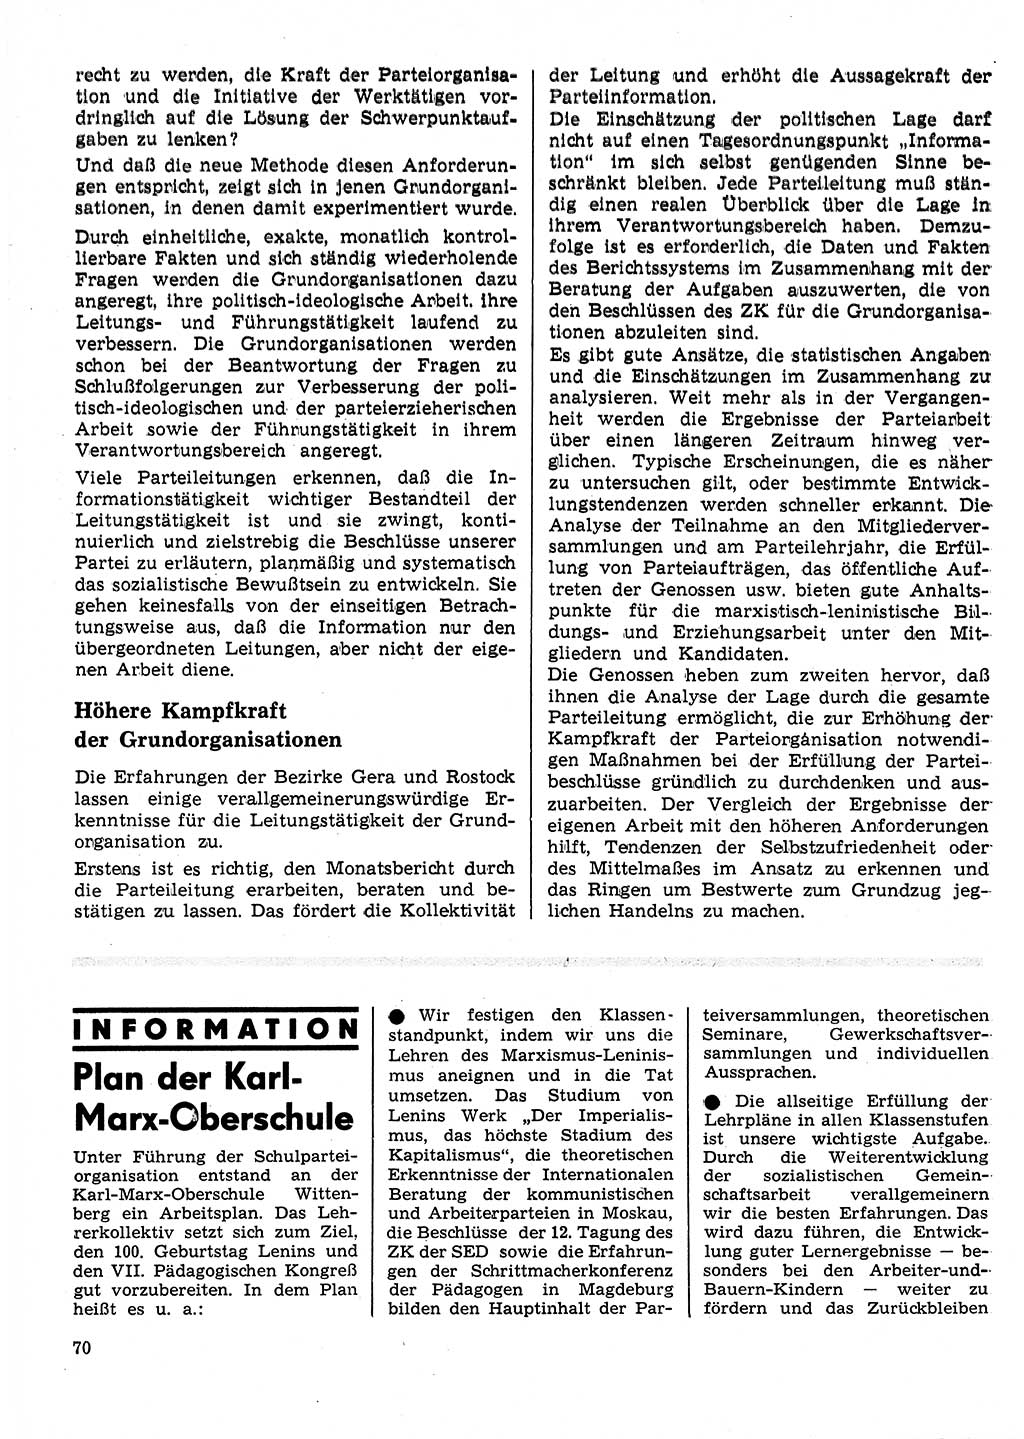 Neuer Weg (NW), Organ des Zentralkomitees (ZK) der SED (Sozialistische Einheitspartei Deutschlands) für Fragen des Parteilebens, 25. Jahrgang [Deutsche Demokratische Republik (DDR)] 1970, Seite 70 (NW ZK SED DDR 1970, S. 70)